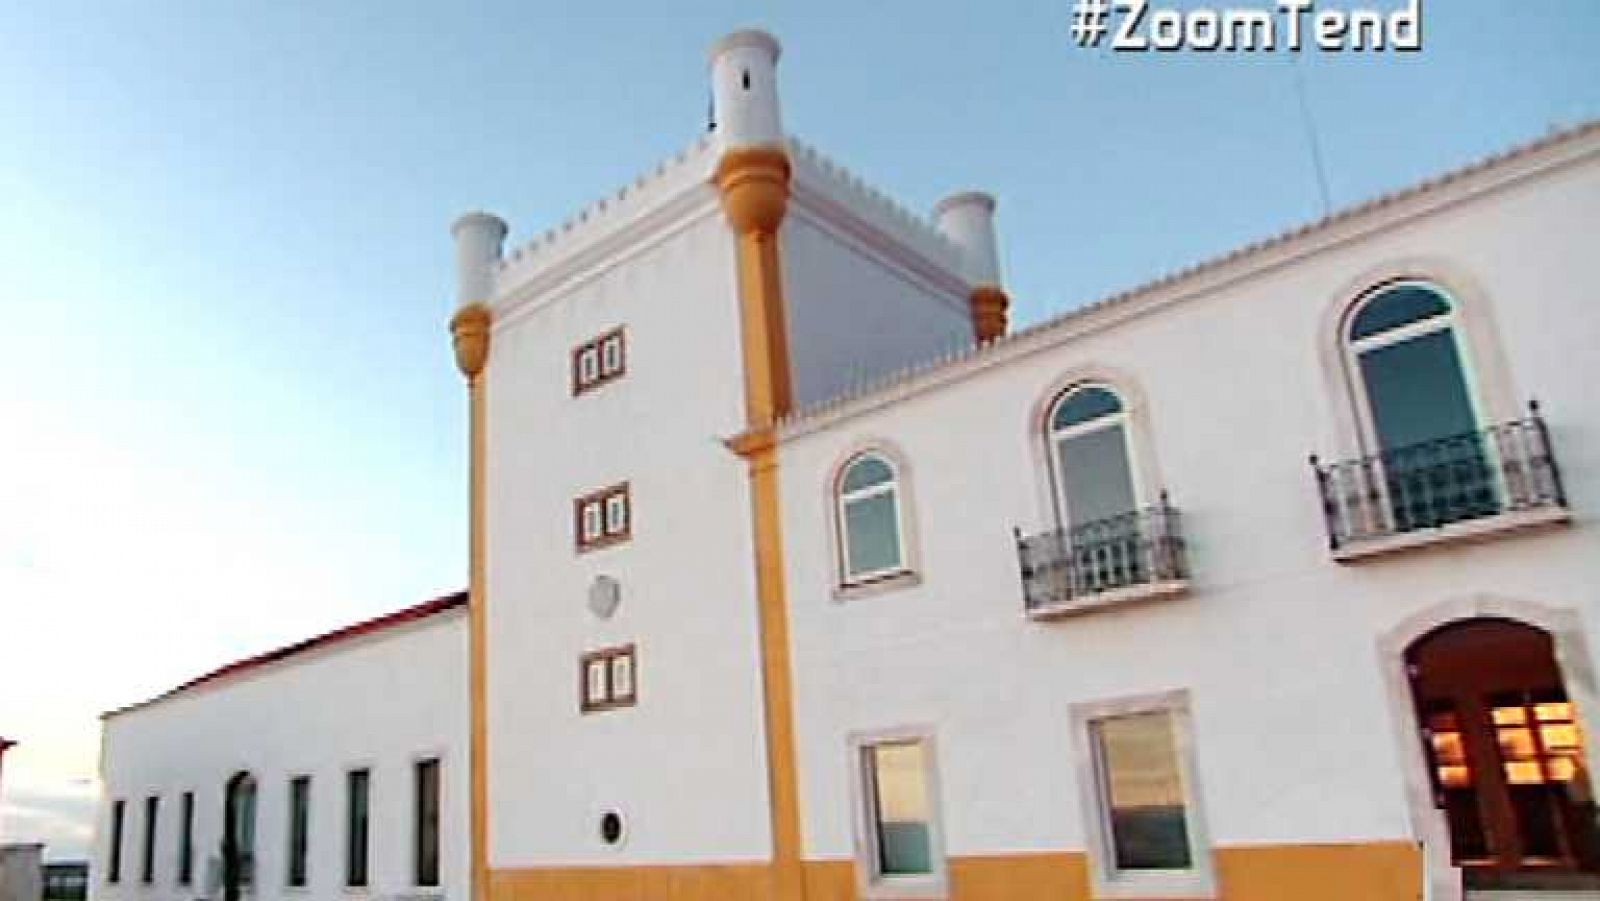 Zoom Tendencias: El Alentejo portugués coge fuelle | RTVE Play